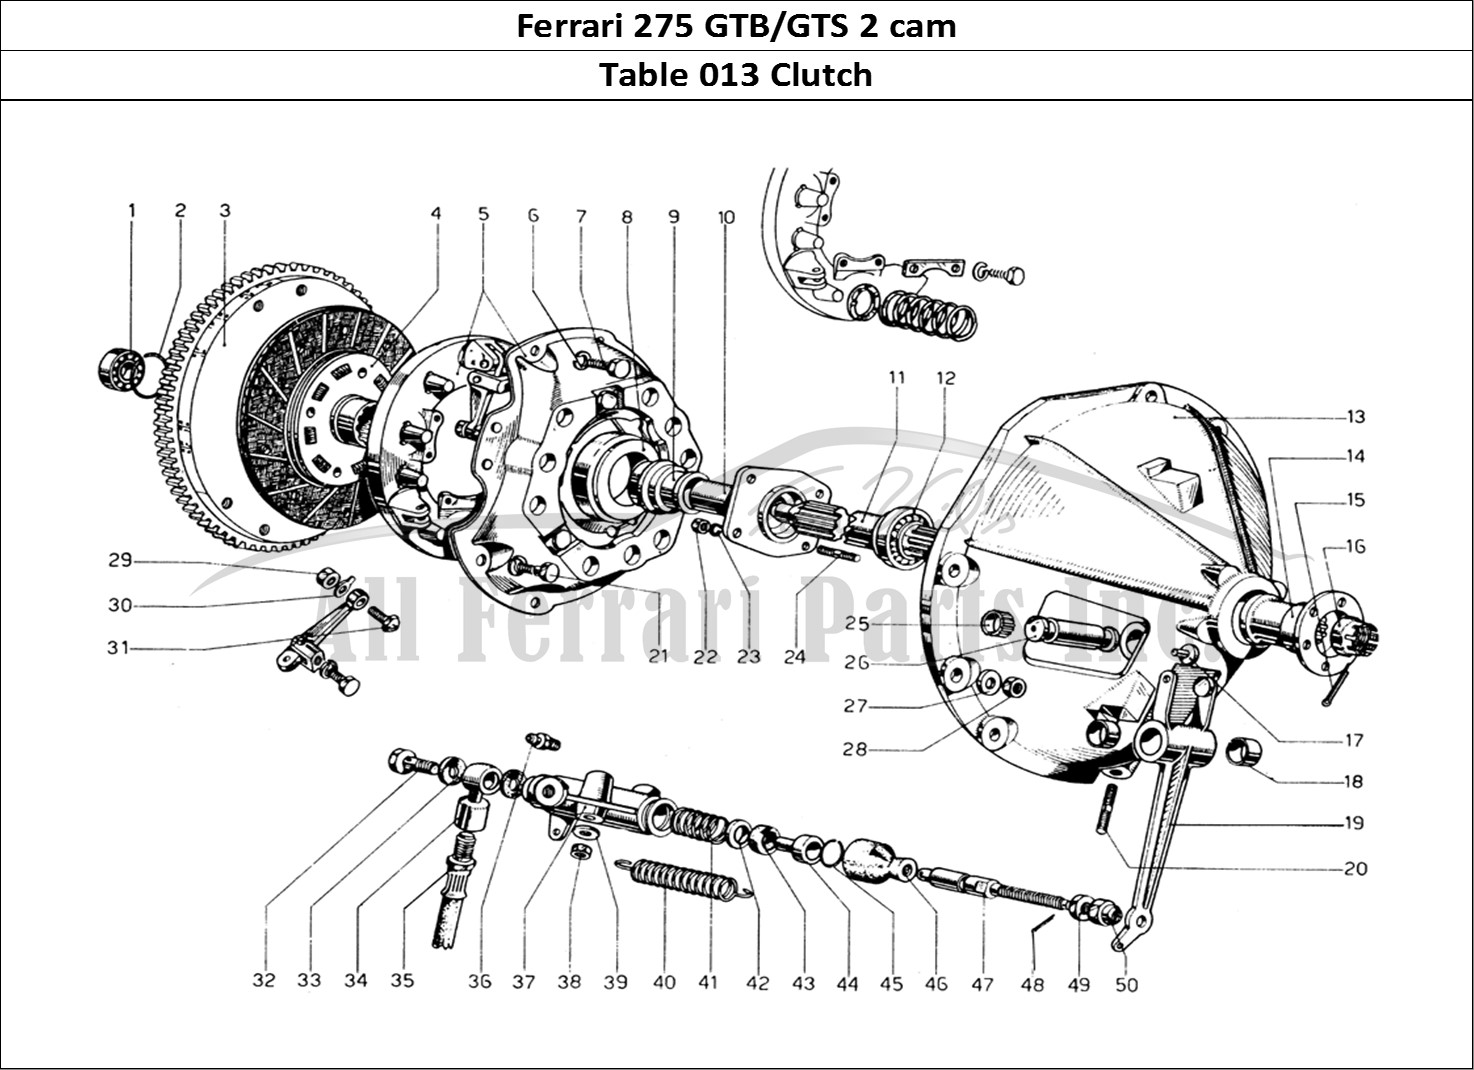 Ferrari Parts Ferrari 275 GTB/GTS 2 cam Page 013 Clutch